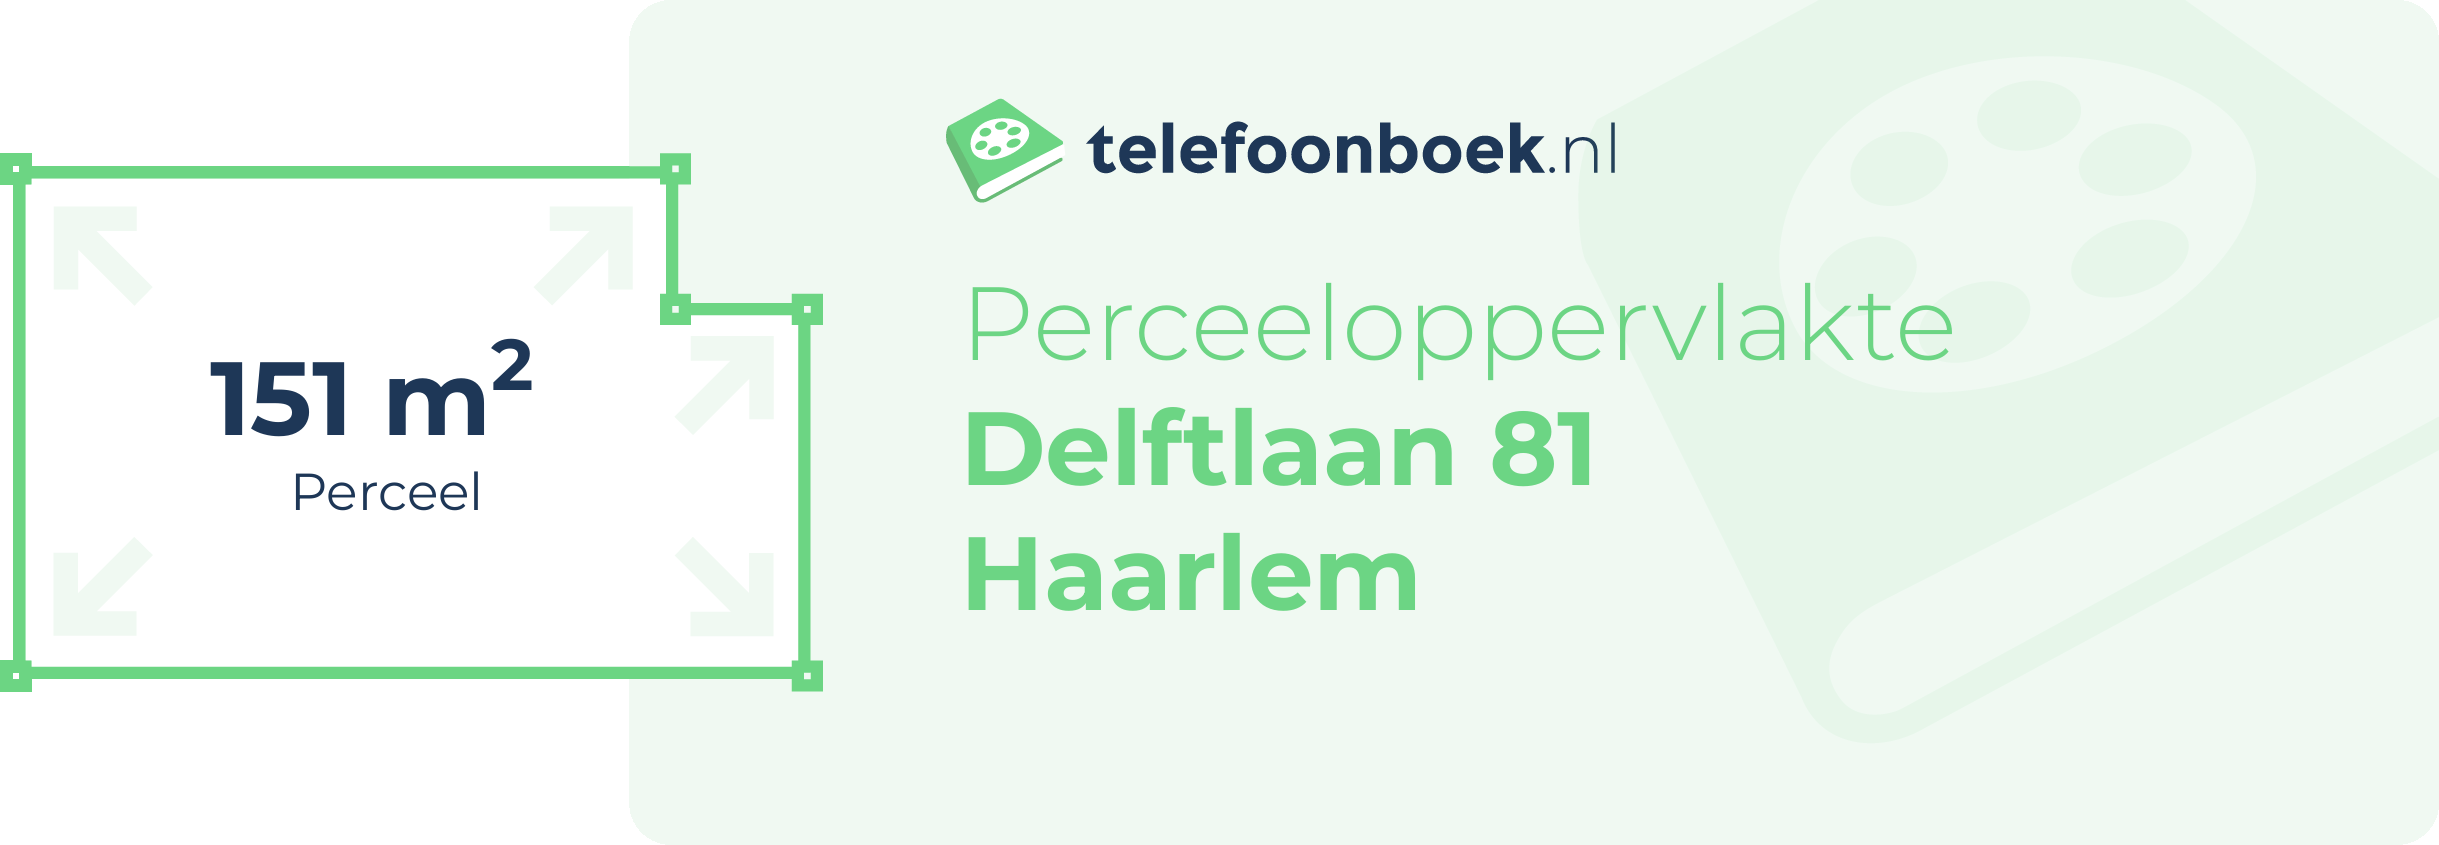 Perceeloppervlakte Delftlaan 81 Haarlem